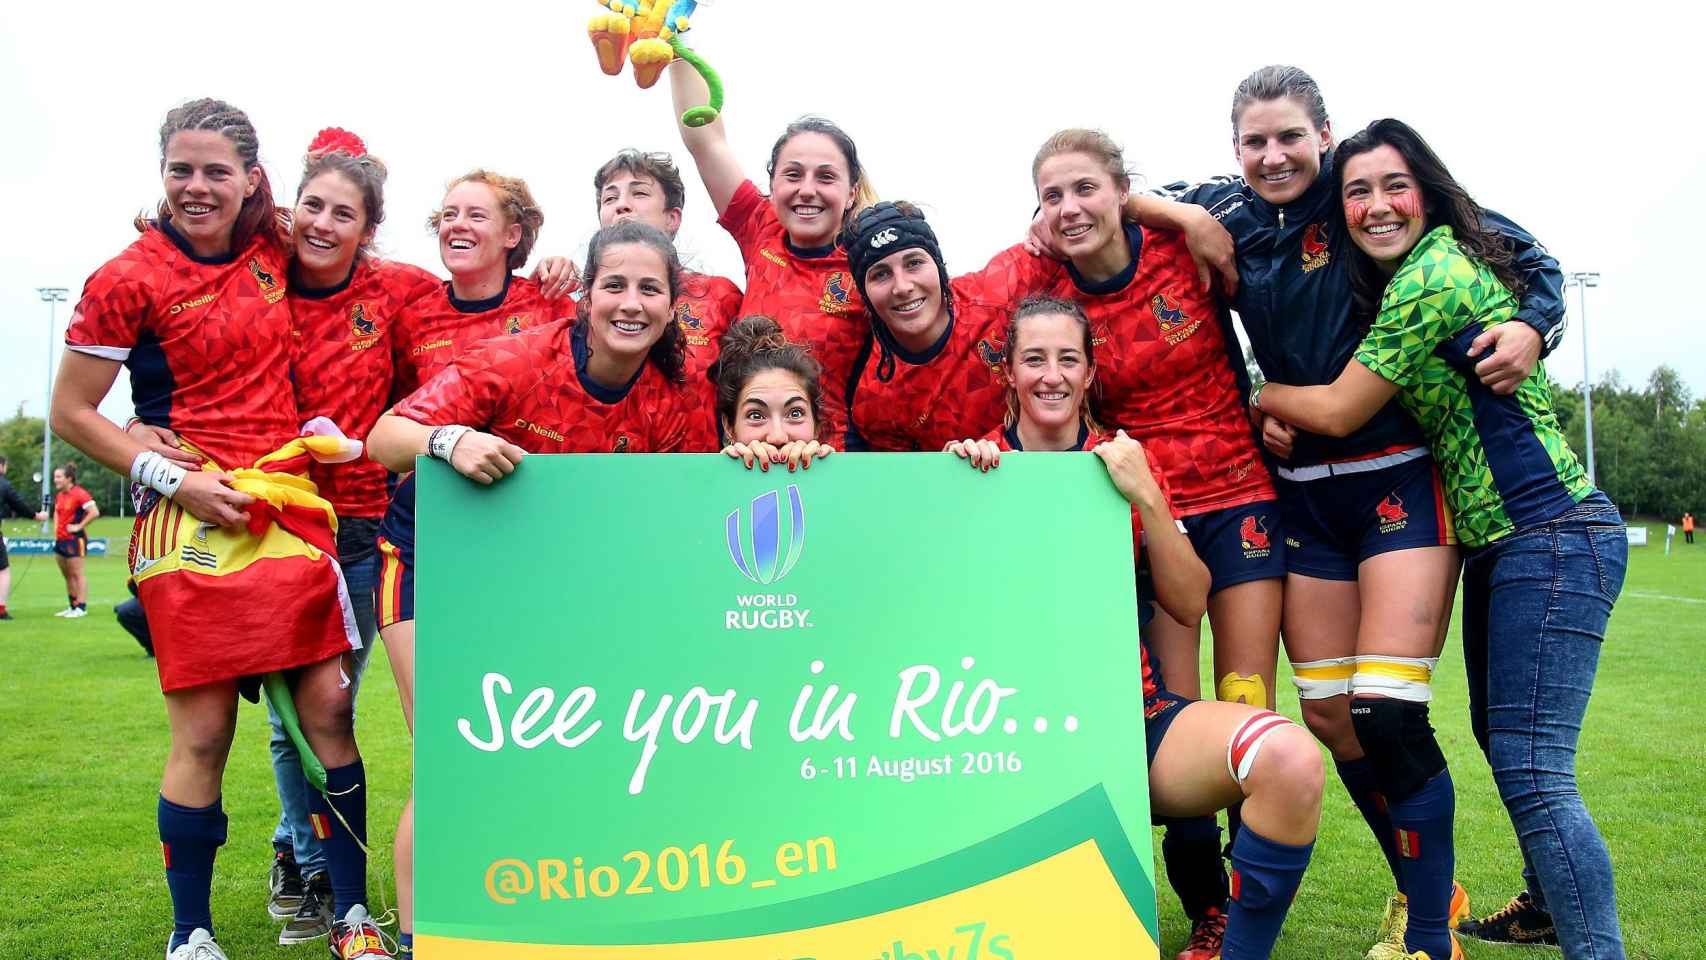 España disputará el primer partido de rugby a 7 olímpico de la historia.